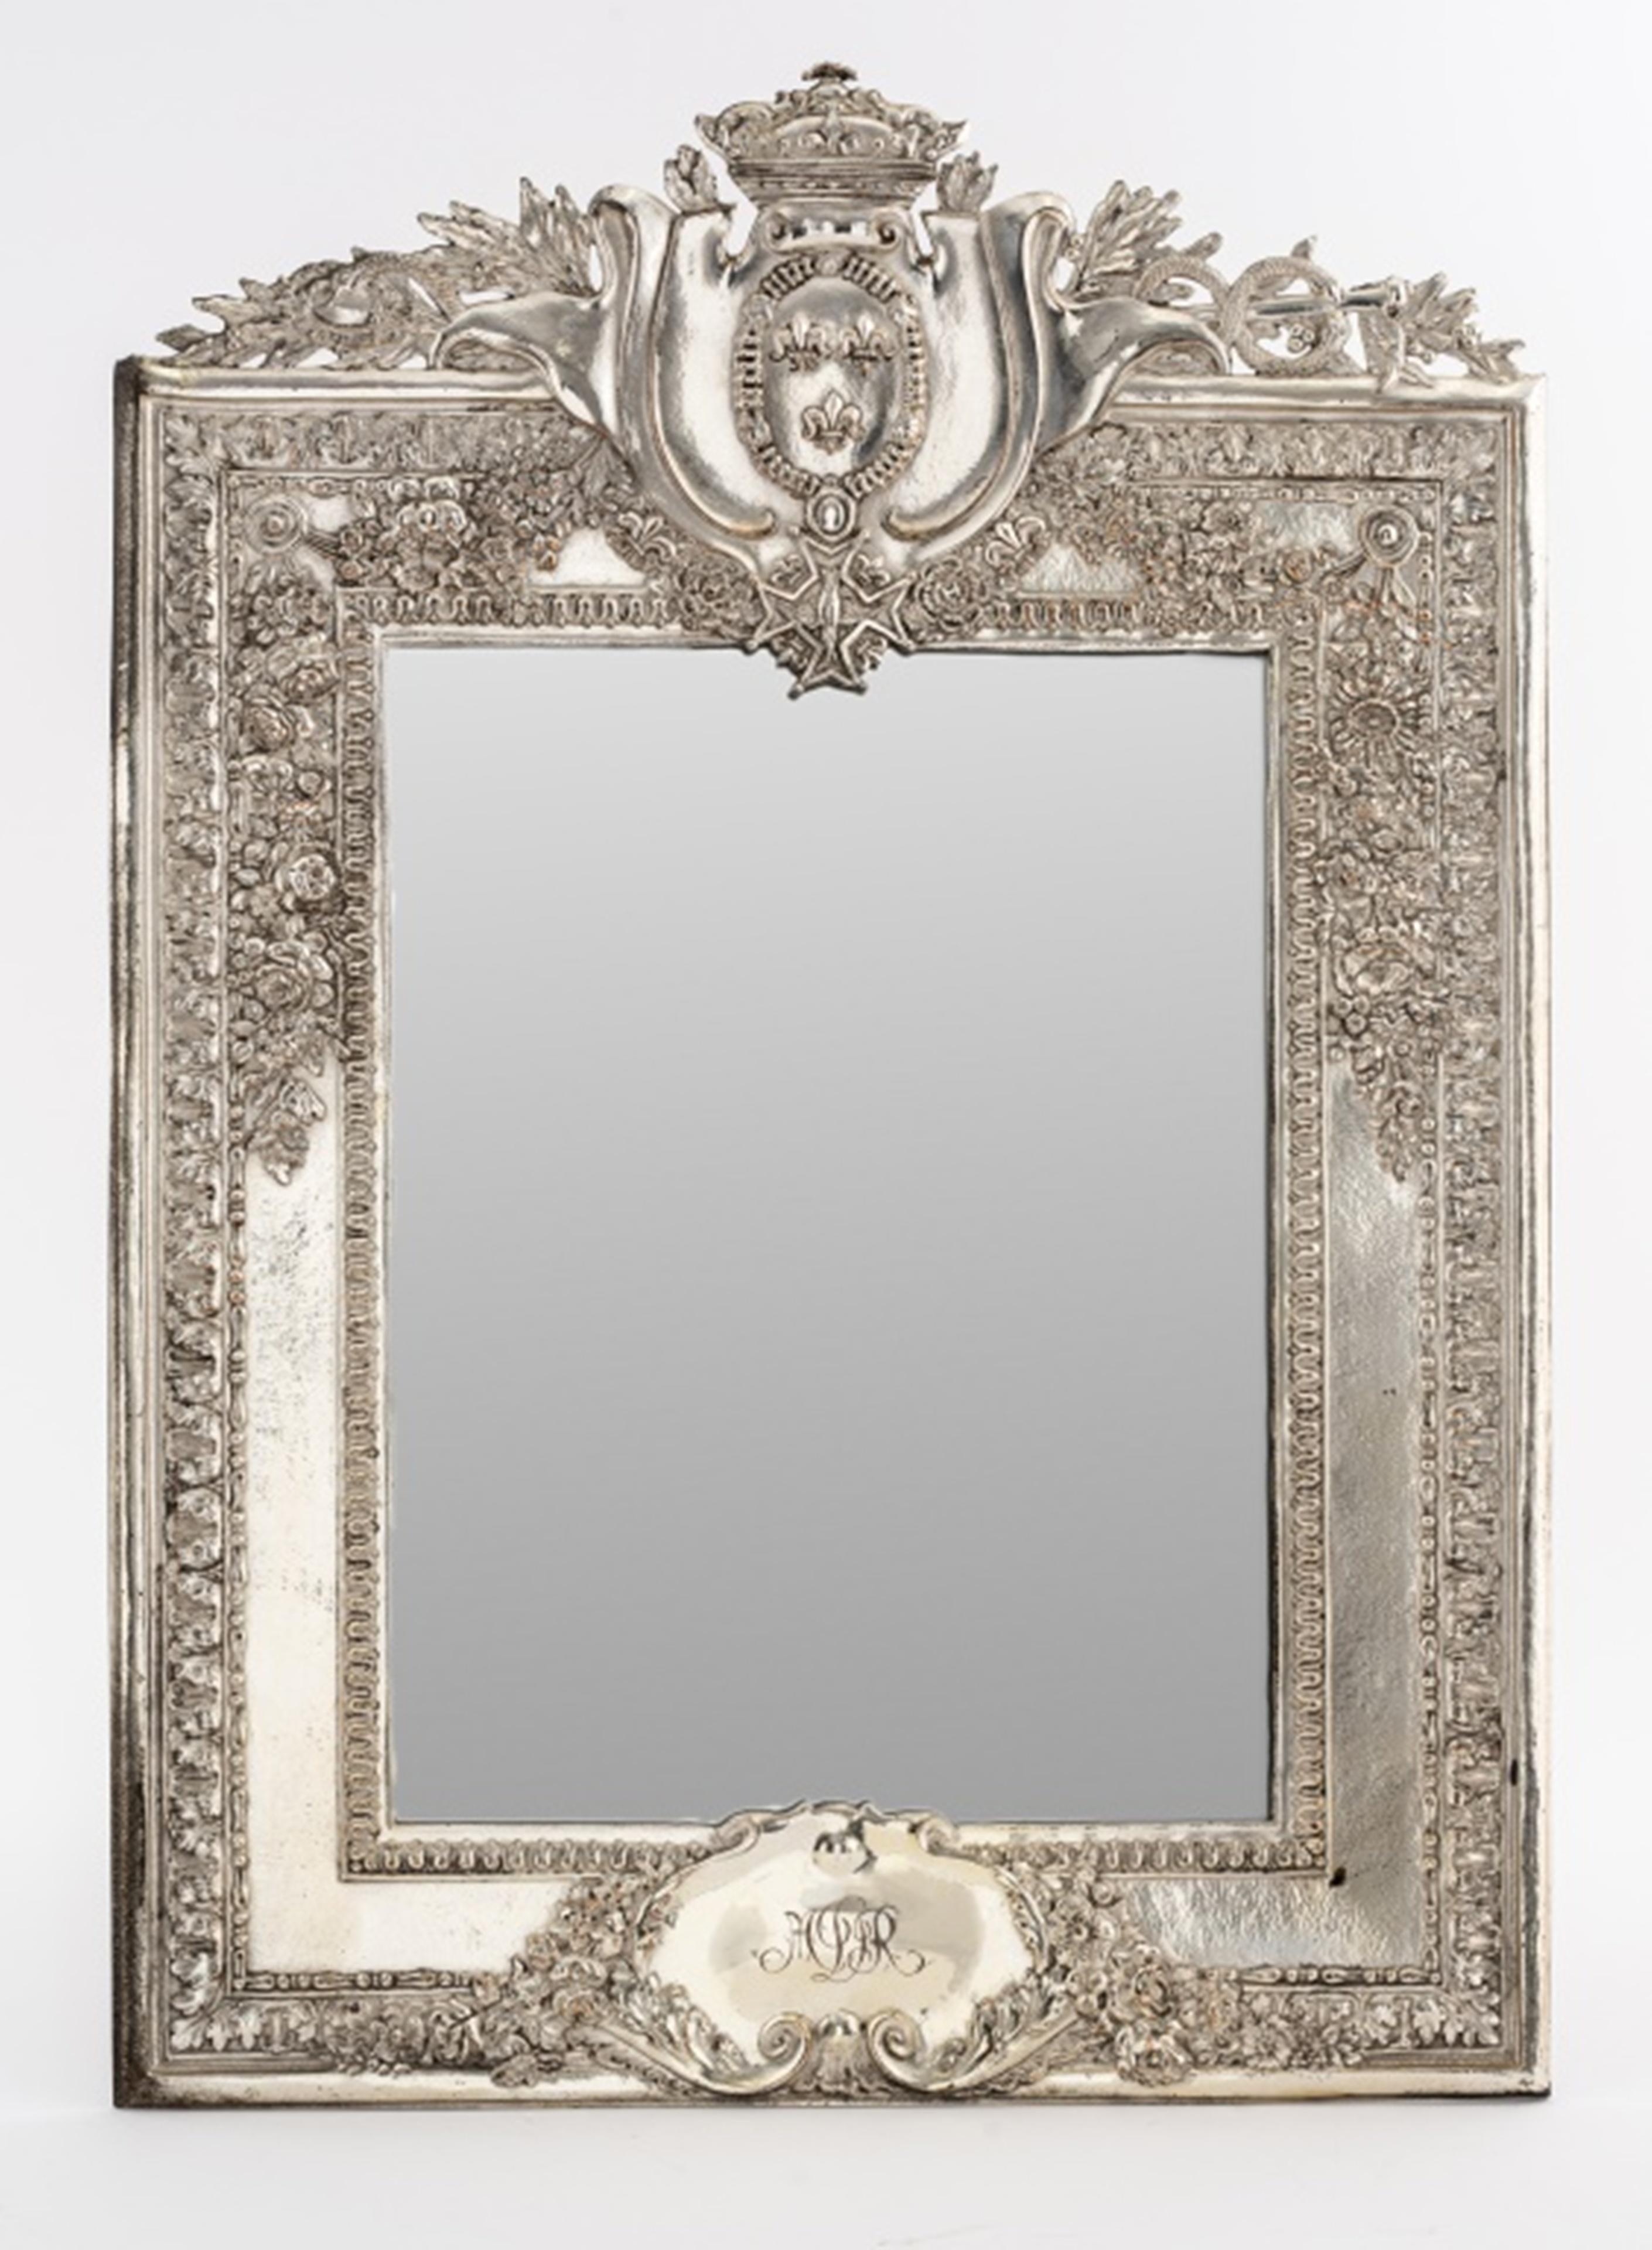 Miroir français en cuivre argenté dans le goût Louis XIV avec décoration feuillagée, 19e s. ou plus tard, monogrammé, marque du fabricant présente sur le dessous, peut-être une copie galvanoplastique ou électrolytique d'un objet original par un